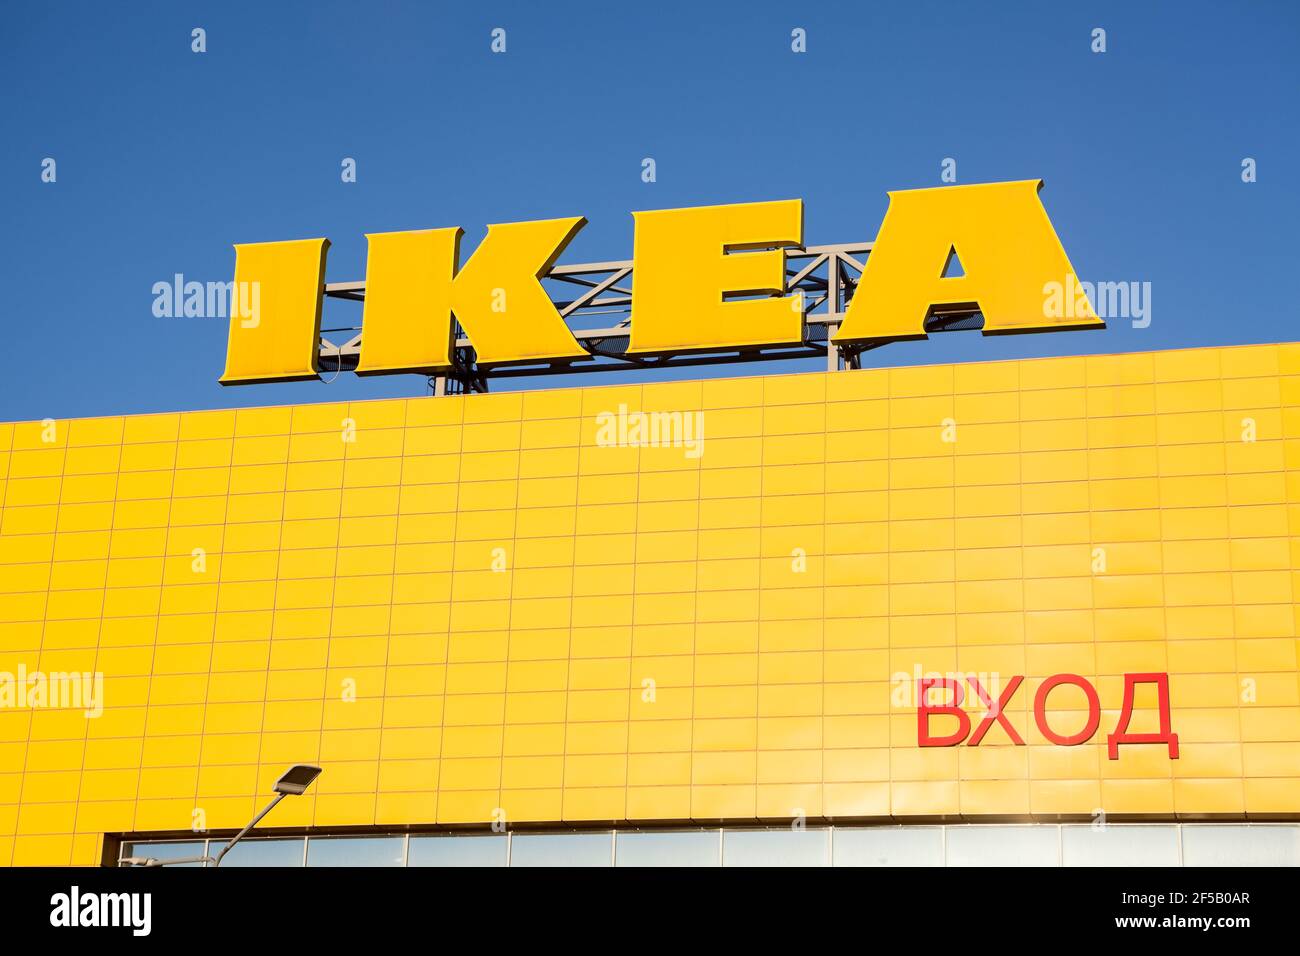 San Pietroburgo, Russia-circa dicembre 2020: Il segno del centro commerciale Ikea è sulla facciata con cartello d'ingresso in russo. Si trova nei negozi Mega Foto Stock